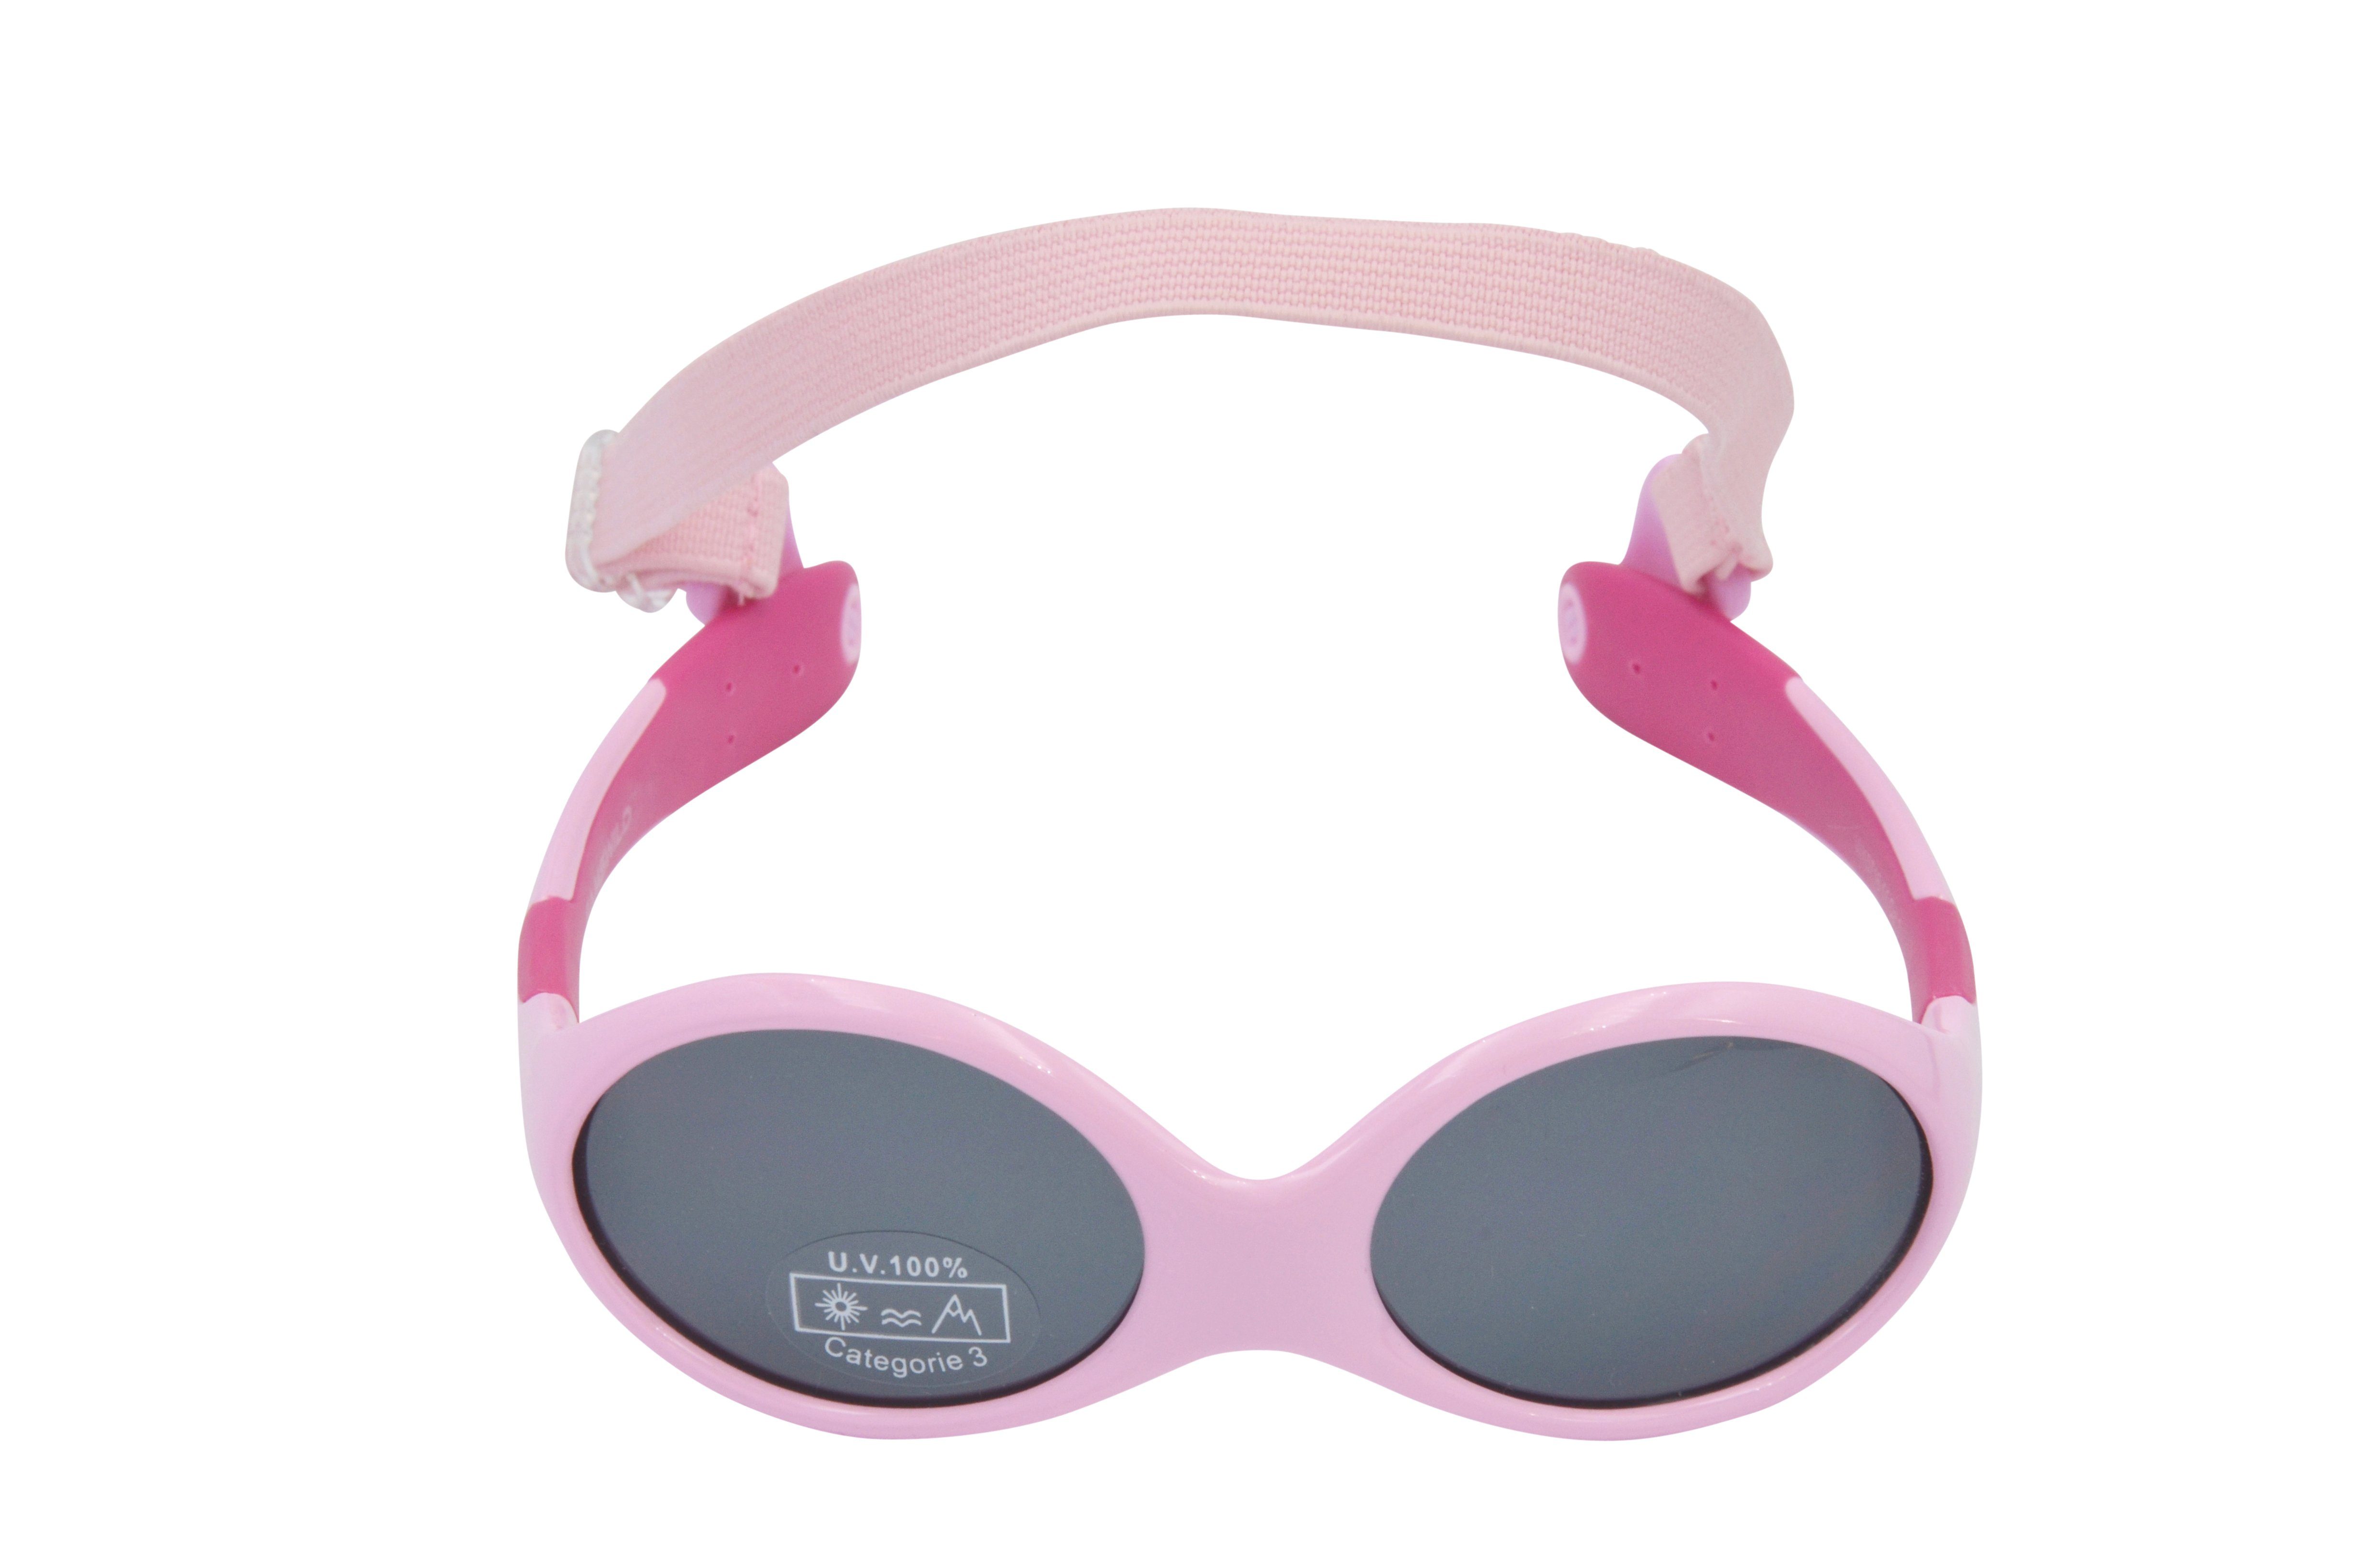 Gamswild Sonnenbrille WK5716 Jahre symmetrische Babybrille GAMSKIDS Form kids richtig Jungen blau-orange, grün rosa-pink, Unisex, immer Mädchen Kleinkindbrille sitzt herum 0-3 